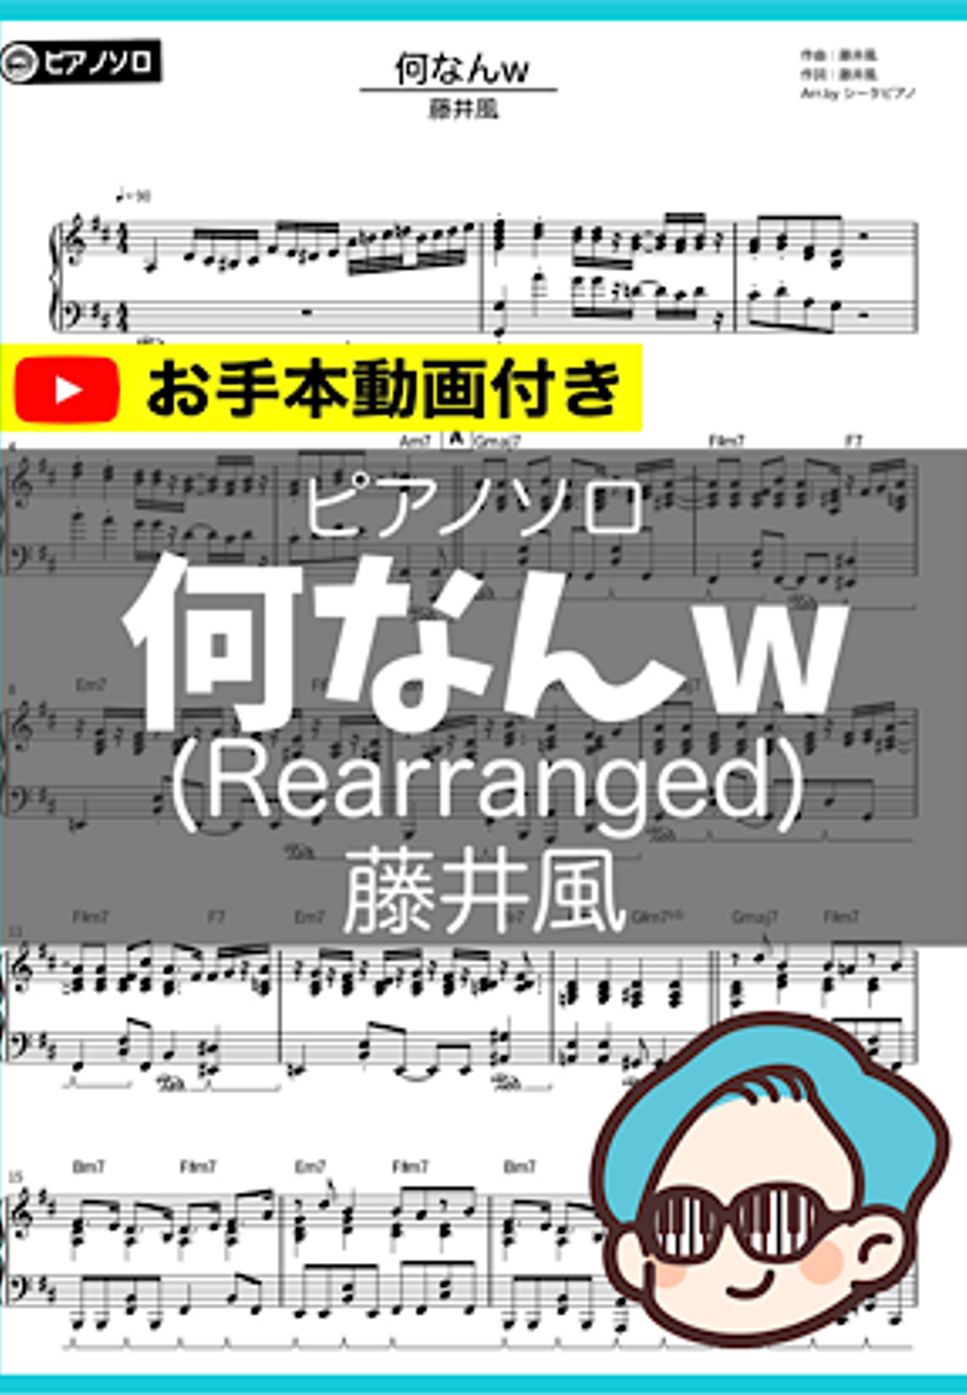 藤井風 - 何なんw (超絶ver.) by シータピアノ